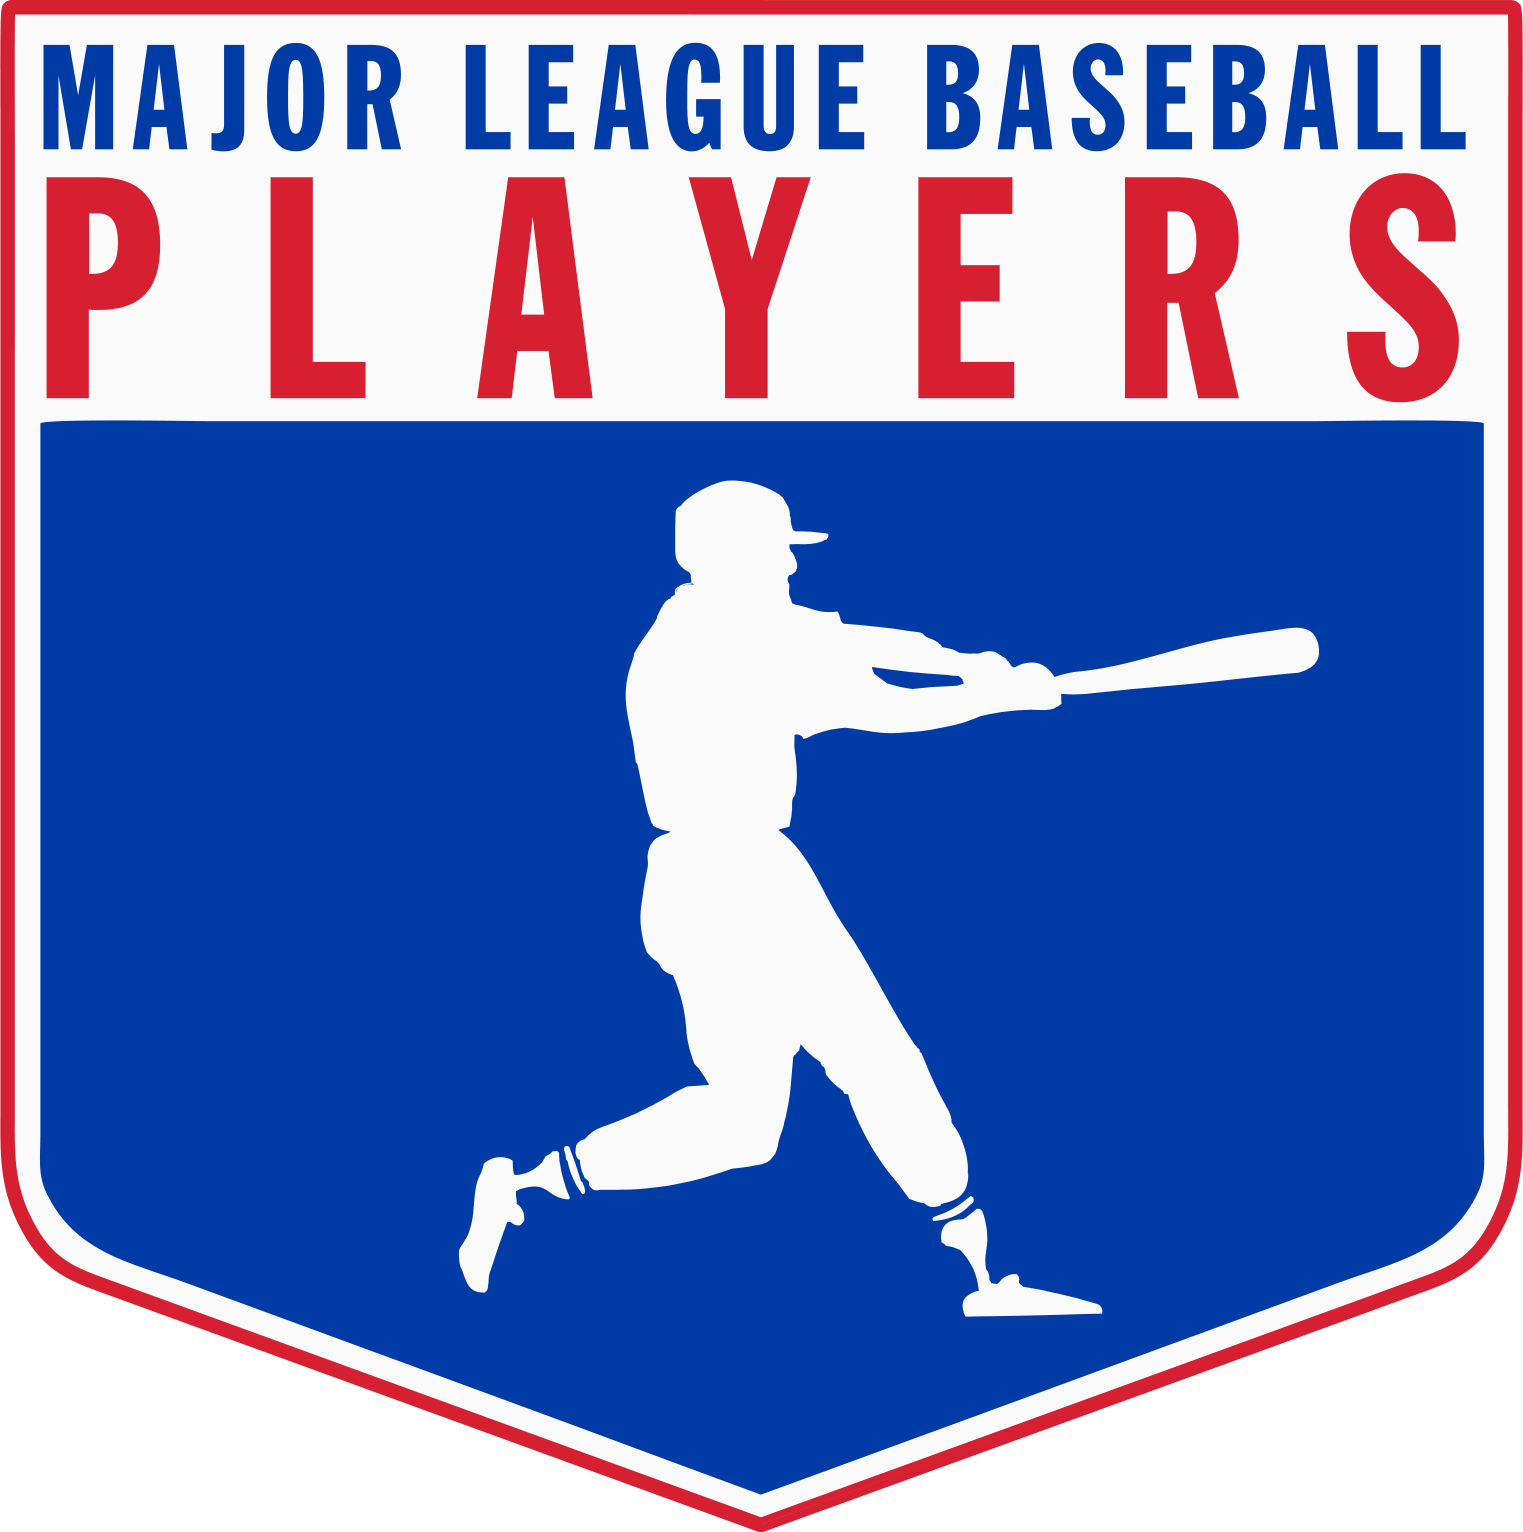 Major League Baseball Logo - Official Logos - The Official Site of Major League Baseball Players ...